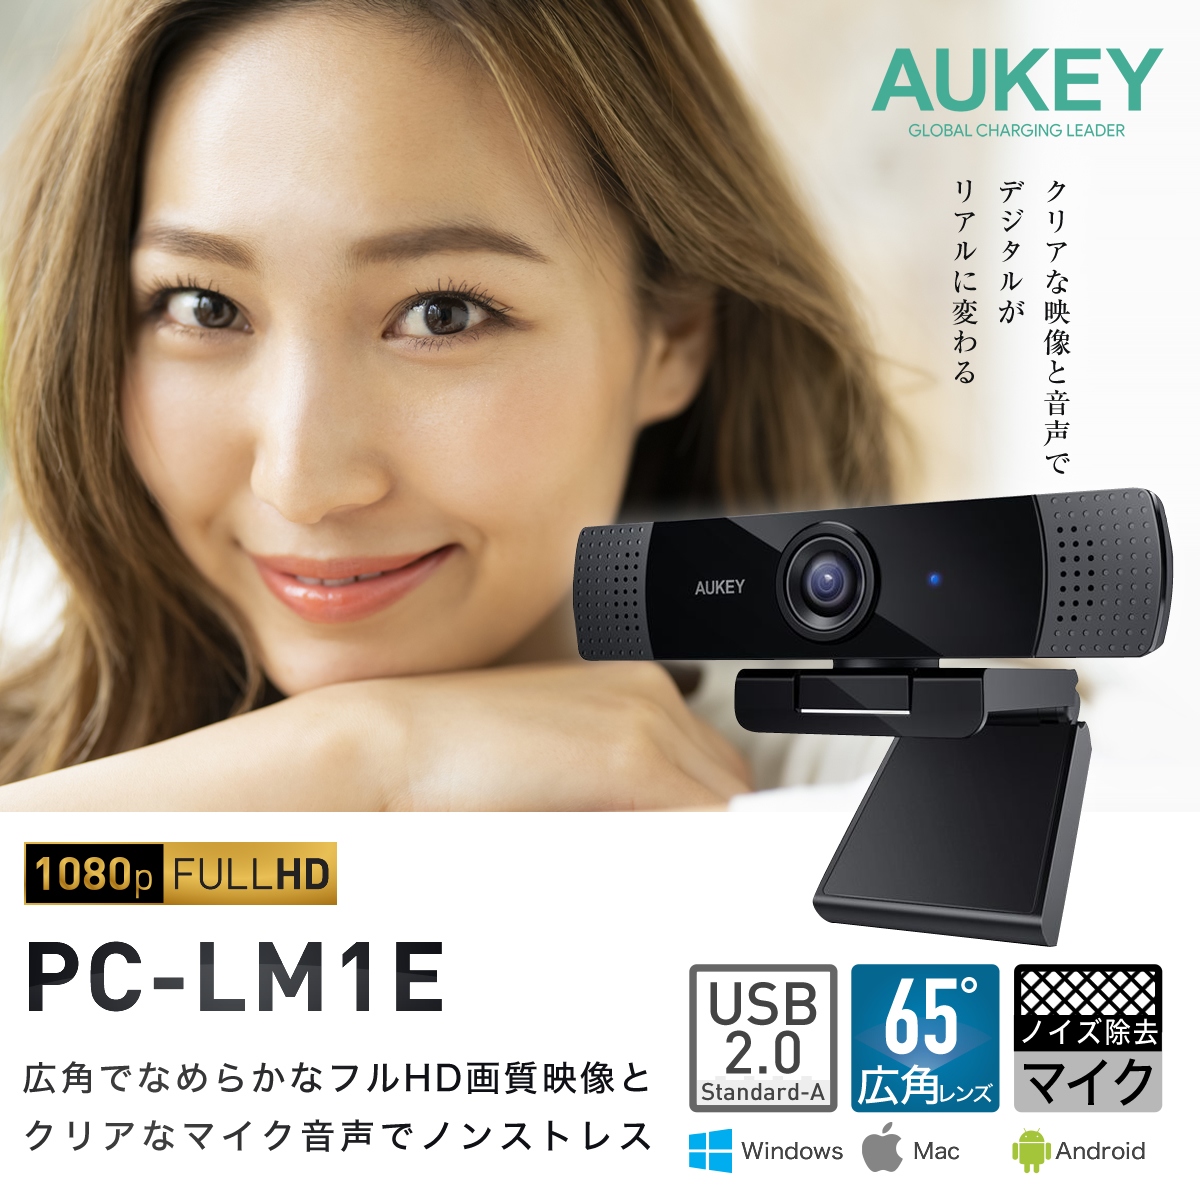  цена пересмотр веб-камера полный HD 1080p высокое разрешение Mike встроенный широкоугольный линзы шум удаление Mike AUKEYo- ключ PC-LM1E